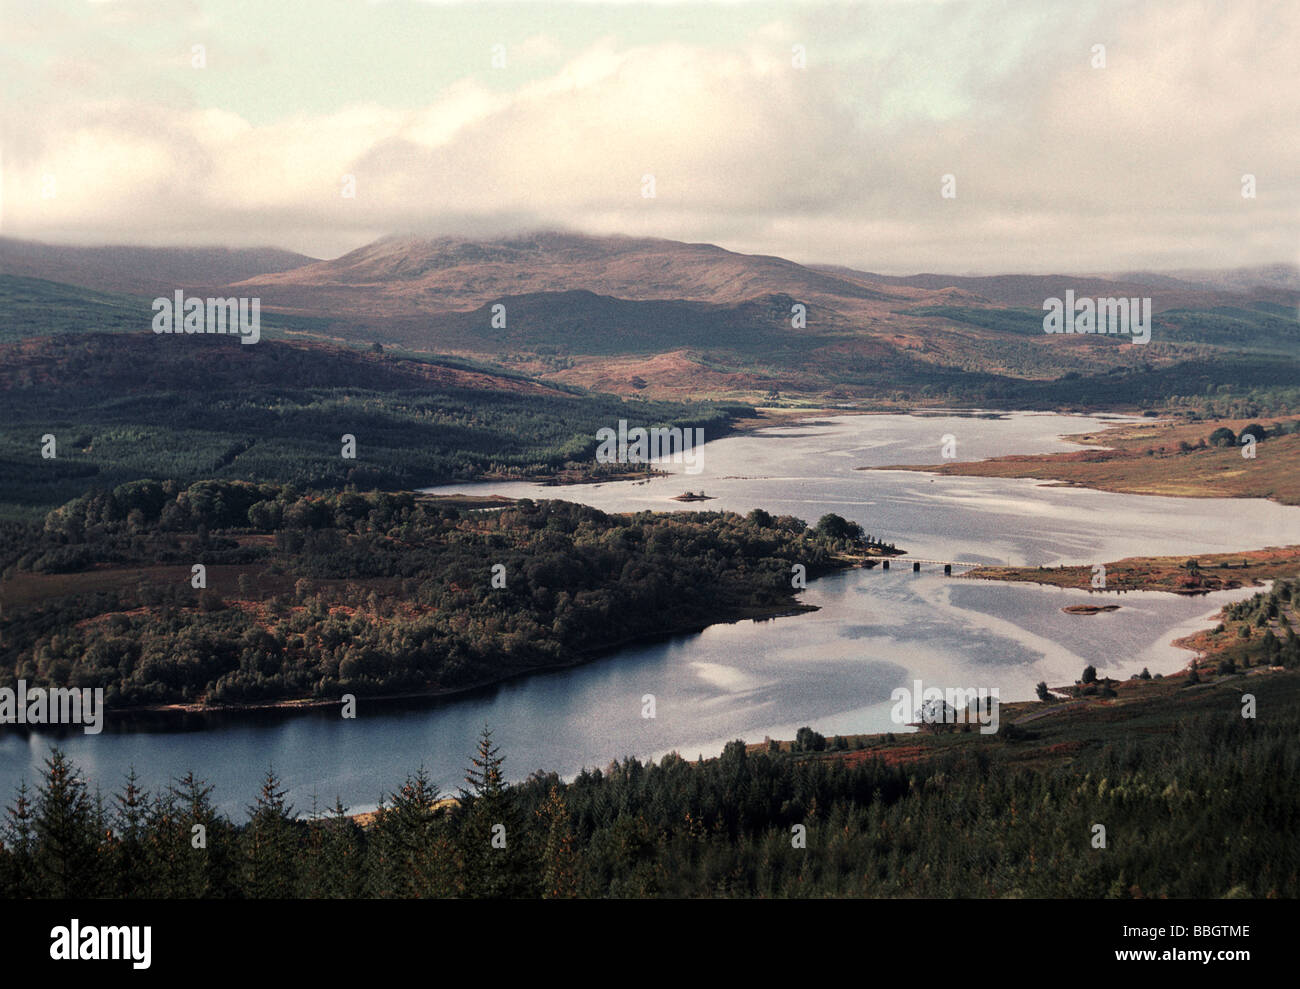 Scotland;Loch Garry in Glen Garry;From A87 road;Highland Region. Stock Photo